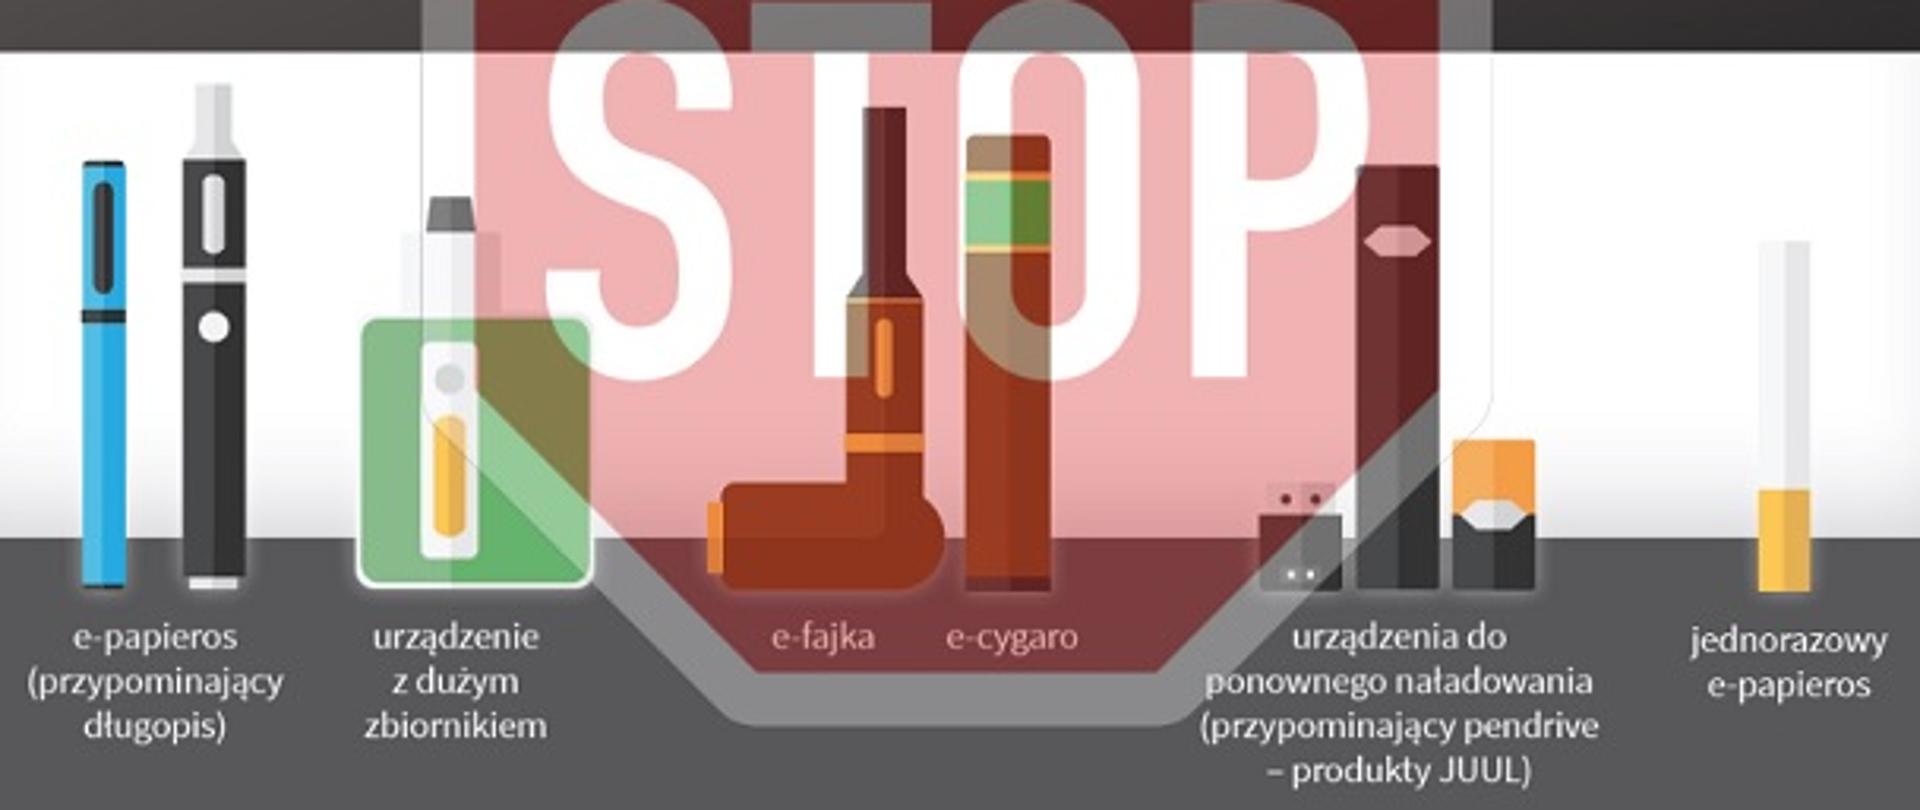 Grafika przedstawia różne rodzaje nowatorskich wyrobów tytoniowych: e-papieros, urządzenie z dużym zbiornikiem, e-fajka, e-cygaro, JUUL, jednorazowy e-papieros - na tle znaku stop.